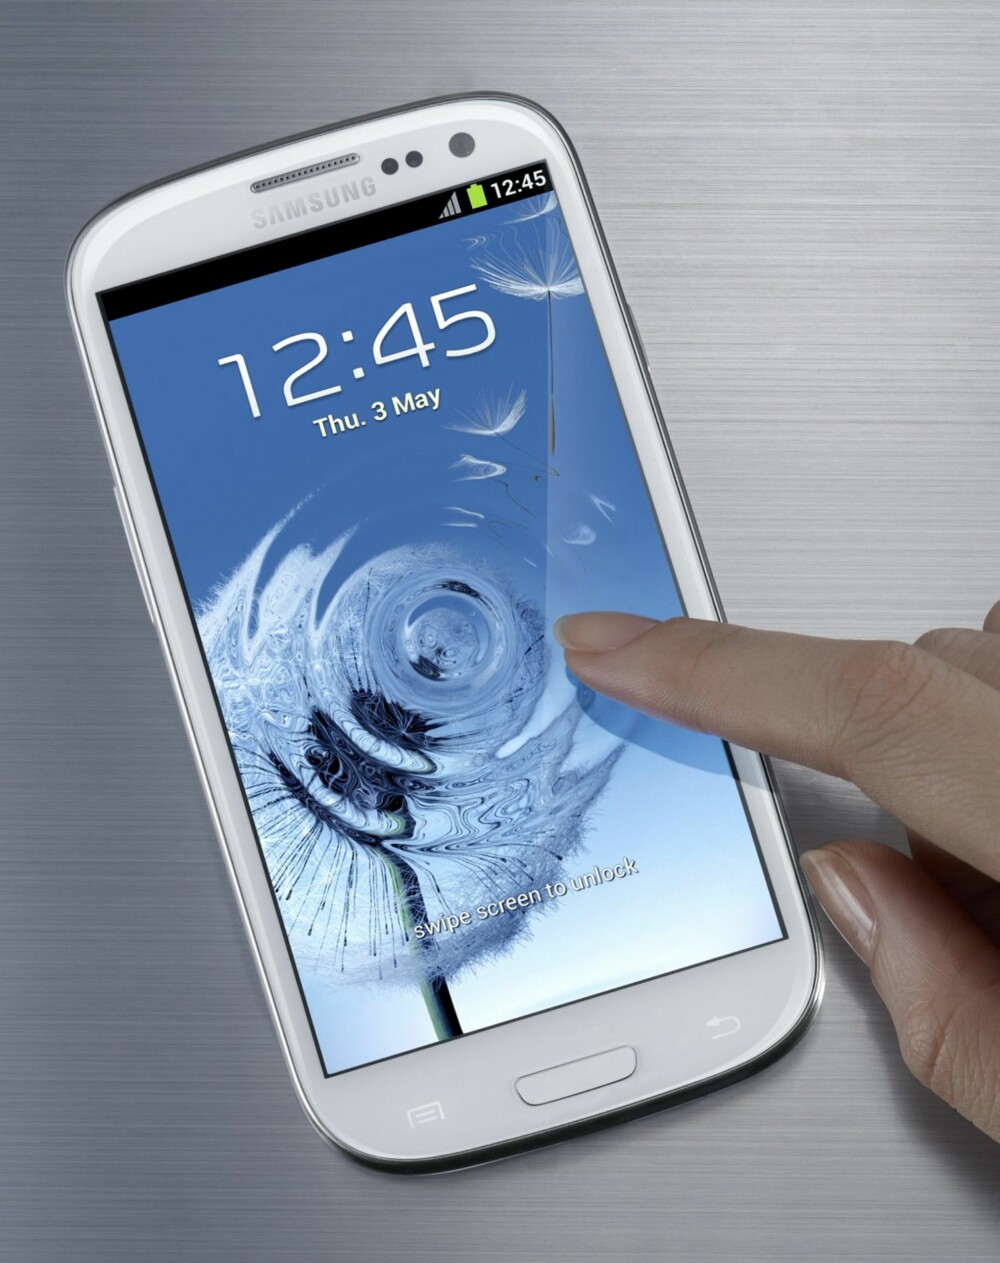 RINGER I VANN: En av mange elegante funksjoner i Galaxy S III er å kopiere funksjoner fra naturen, som når du lager ringer i vann med fingeren din.